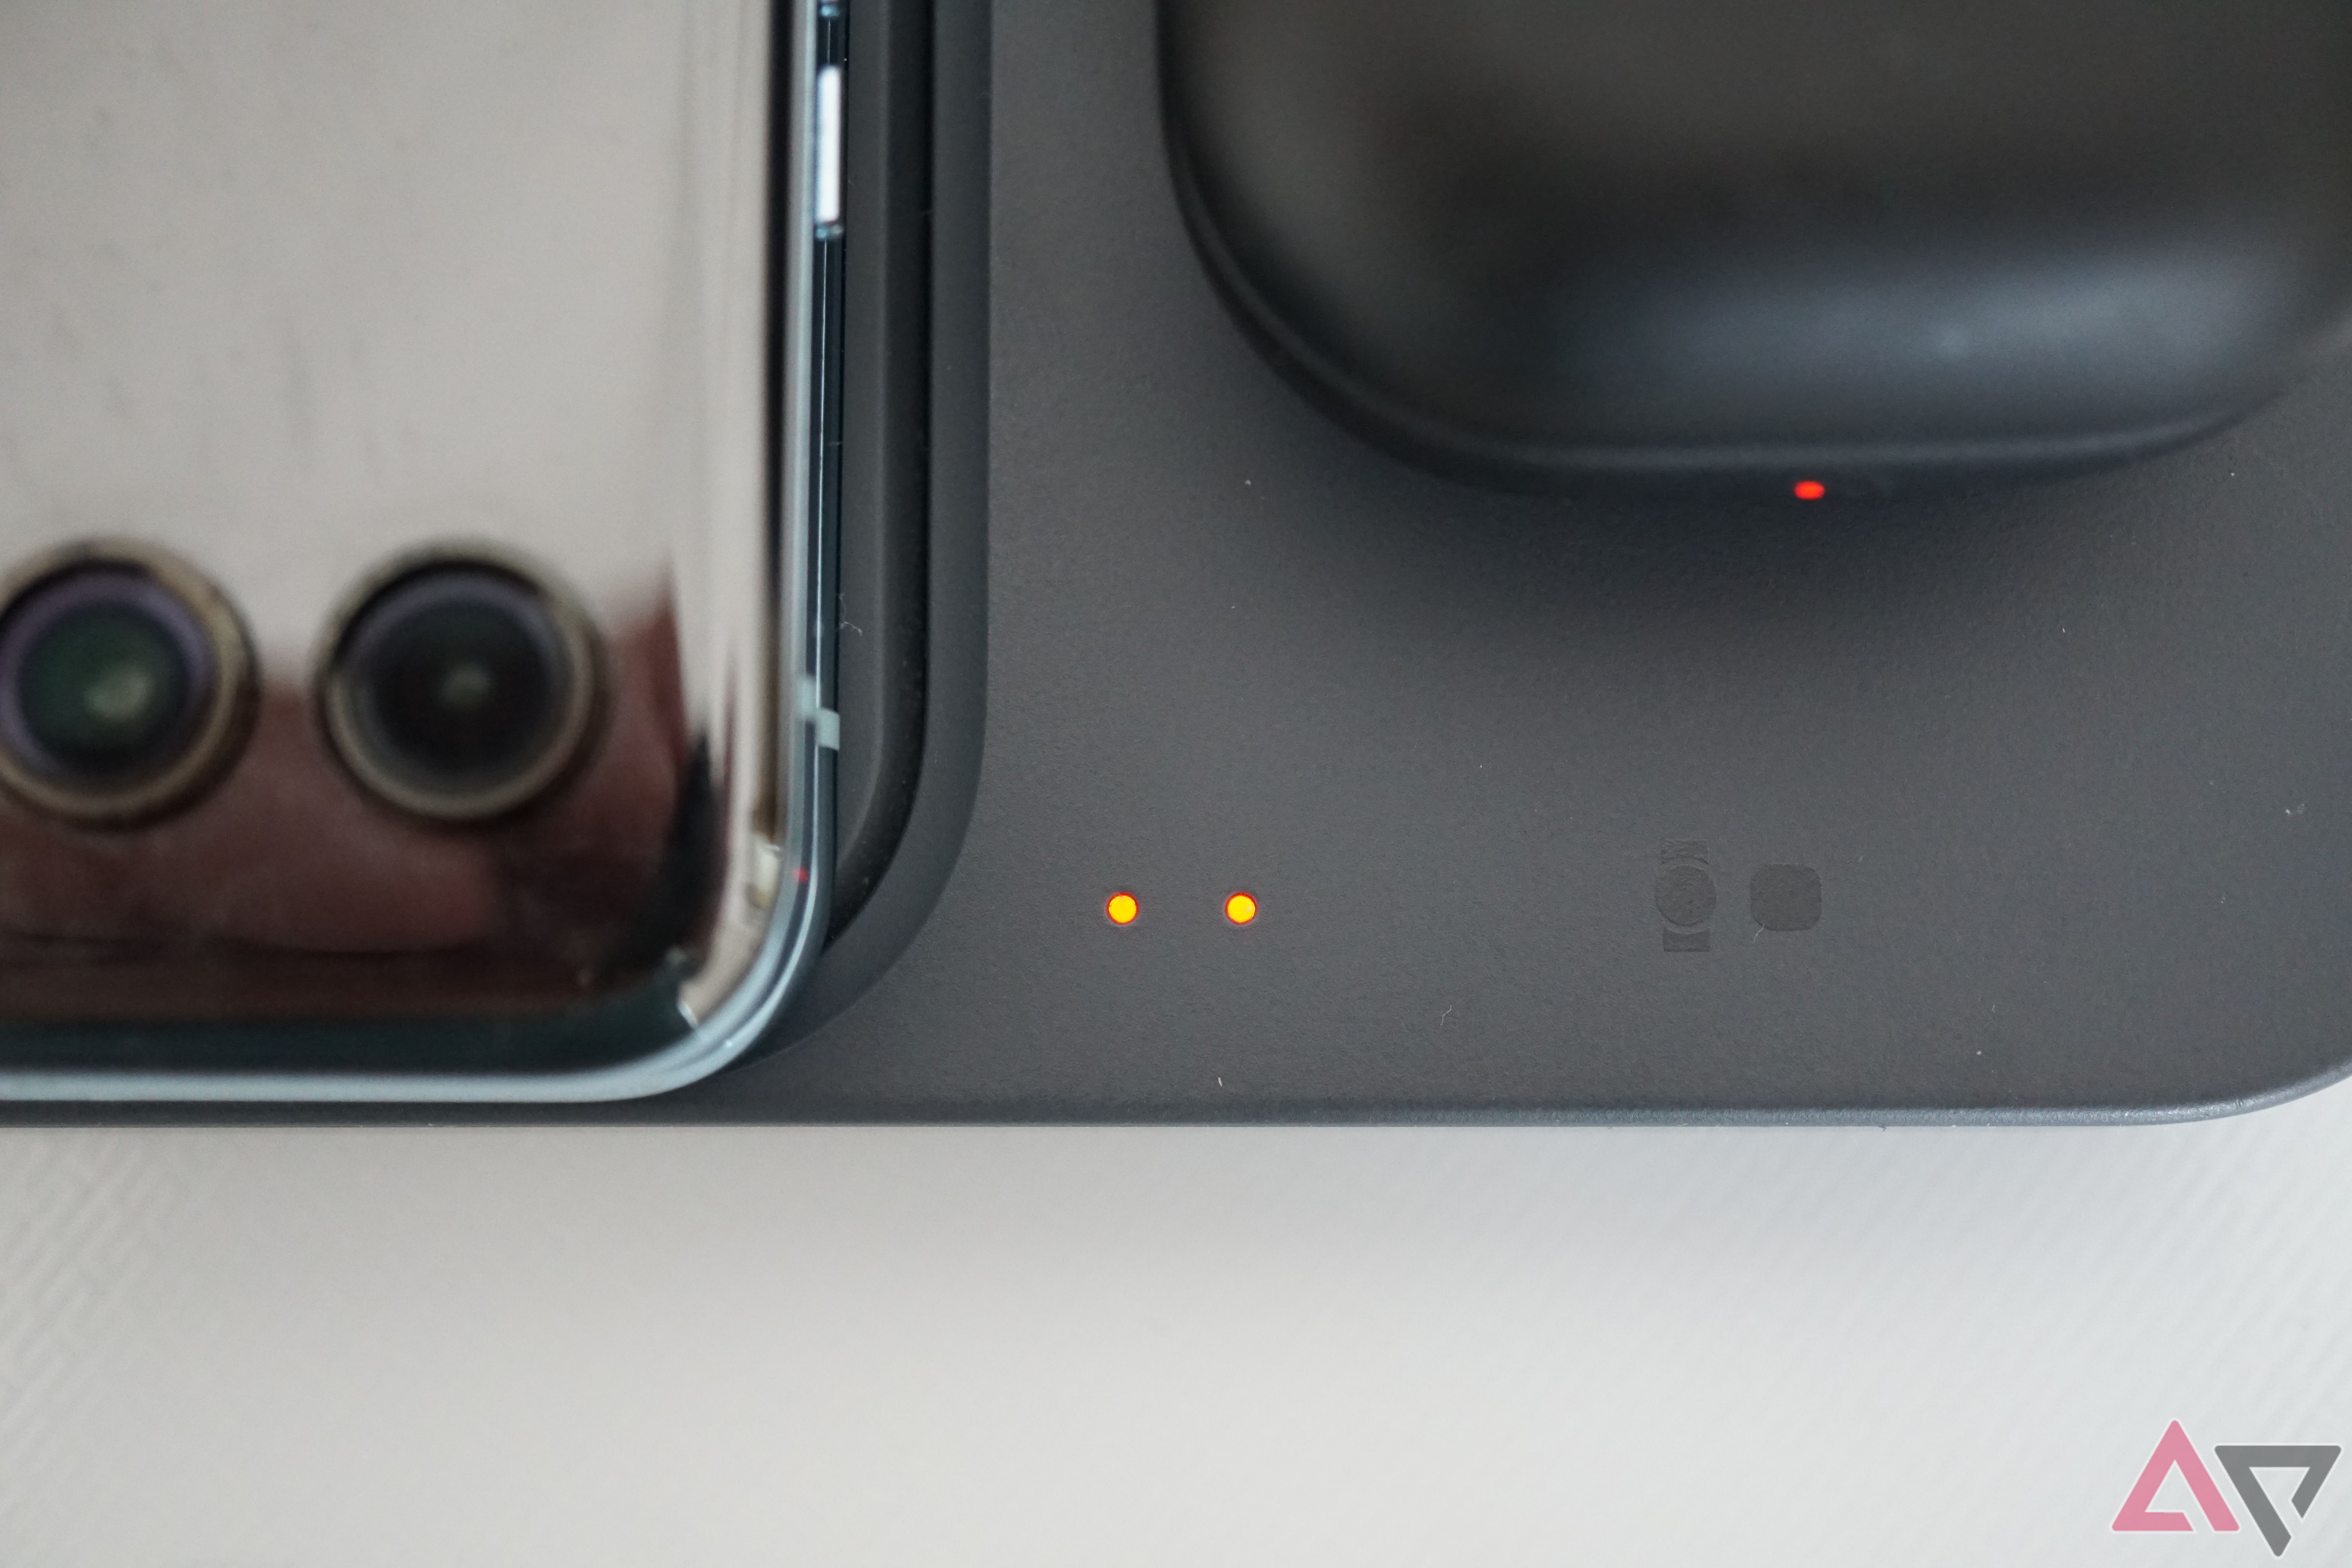 Um close-up dos indicadores LED do Samsung Wireless Charger Duo